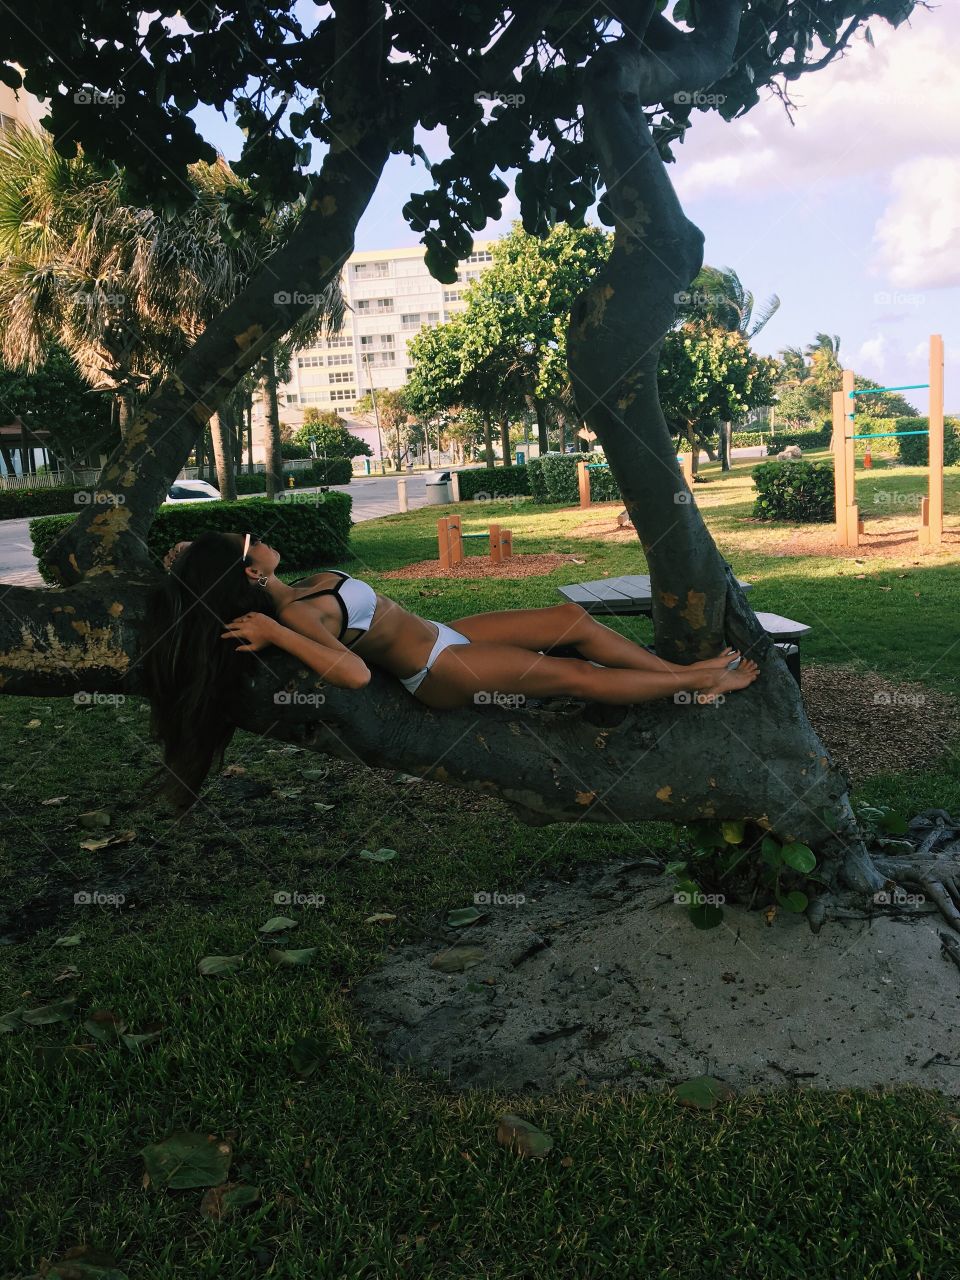 Woman in bikini lying on tree trunk